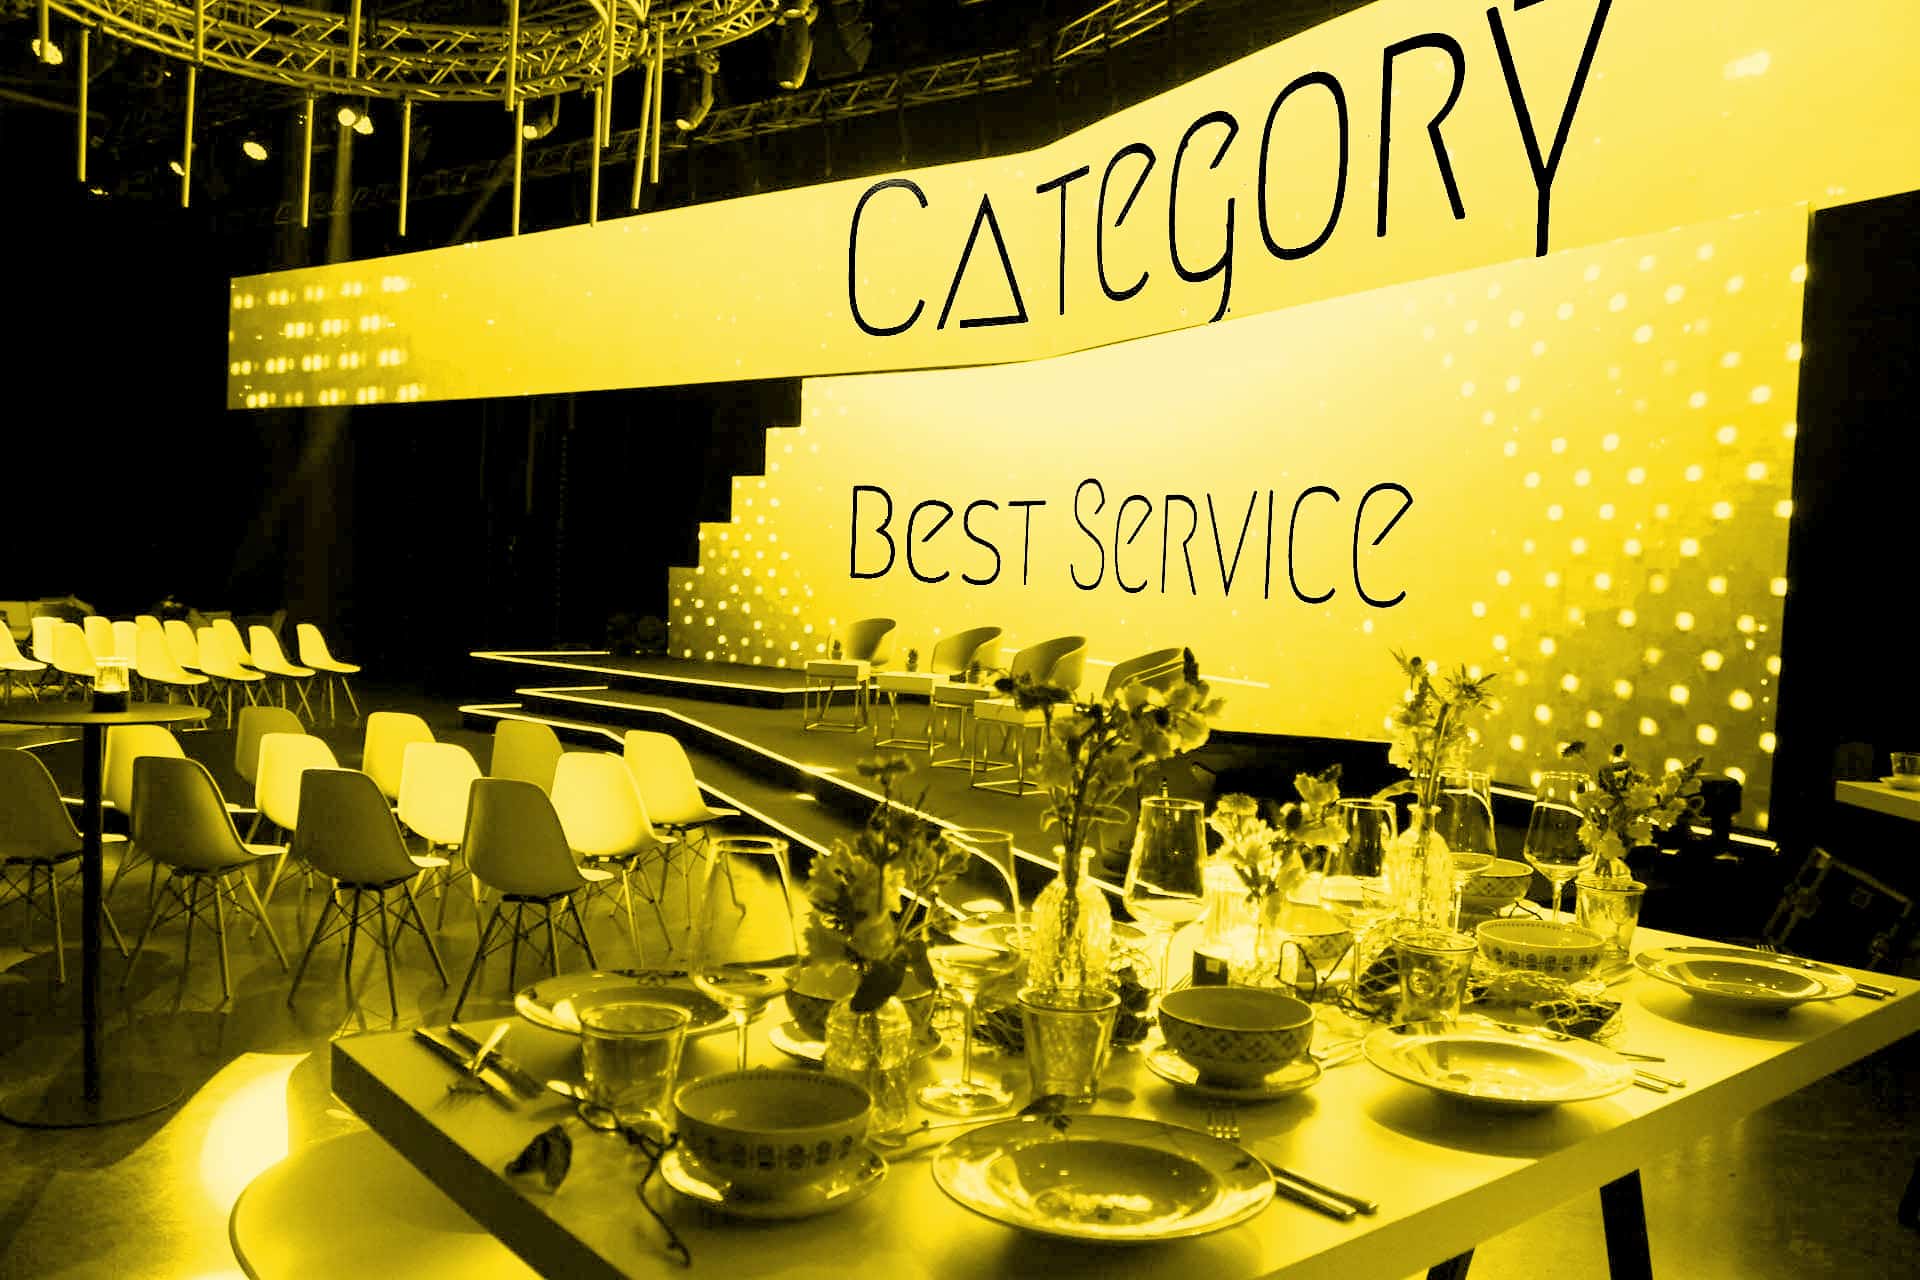 Eine Awardverleihung zum Thema "bester Service"